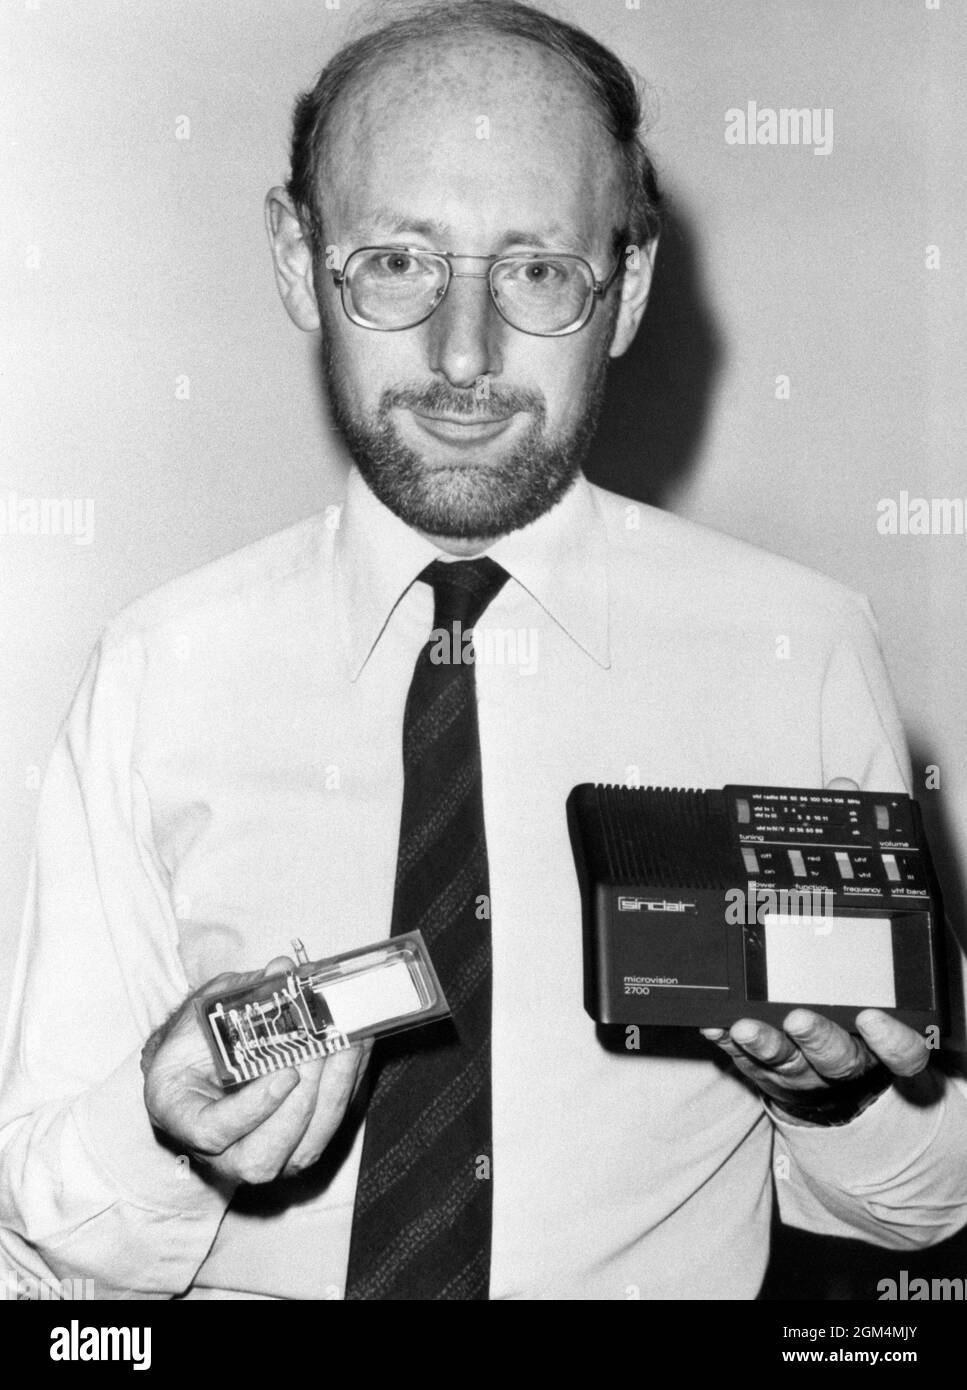 Photo du dossier datée du 24/04/81 de Sir Clive Sinclair, fondateur de Sinclair Research, avec le prototype d'une nouvelle télévision à écran plat multi-standard, la 'Microvision' . Sir Clive Sinclair, pionnier de l'informatique domestique, est décédé à l'âge de 81 ans, selon des rapports. Date d'émission : jeudi 16 septembre 2021. Banque D'Images